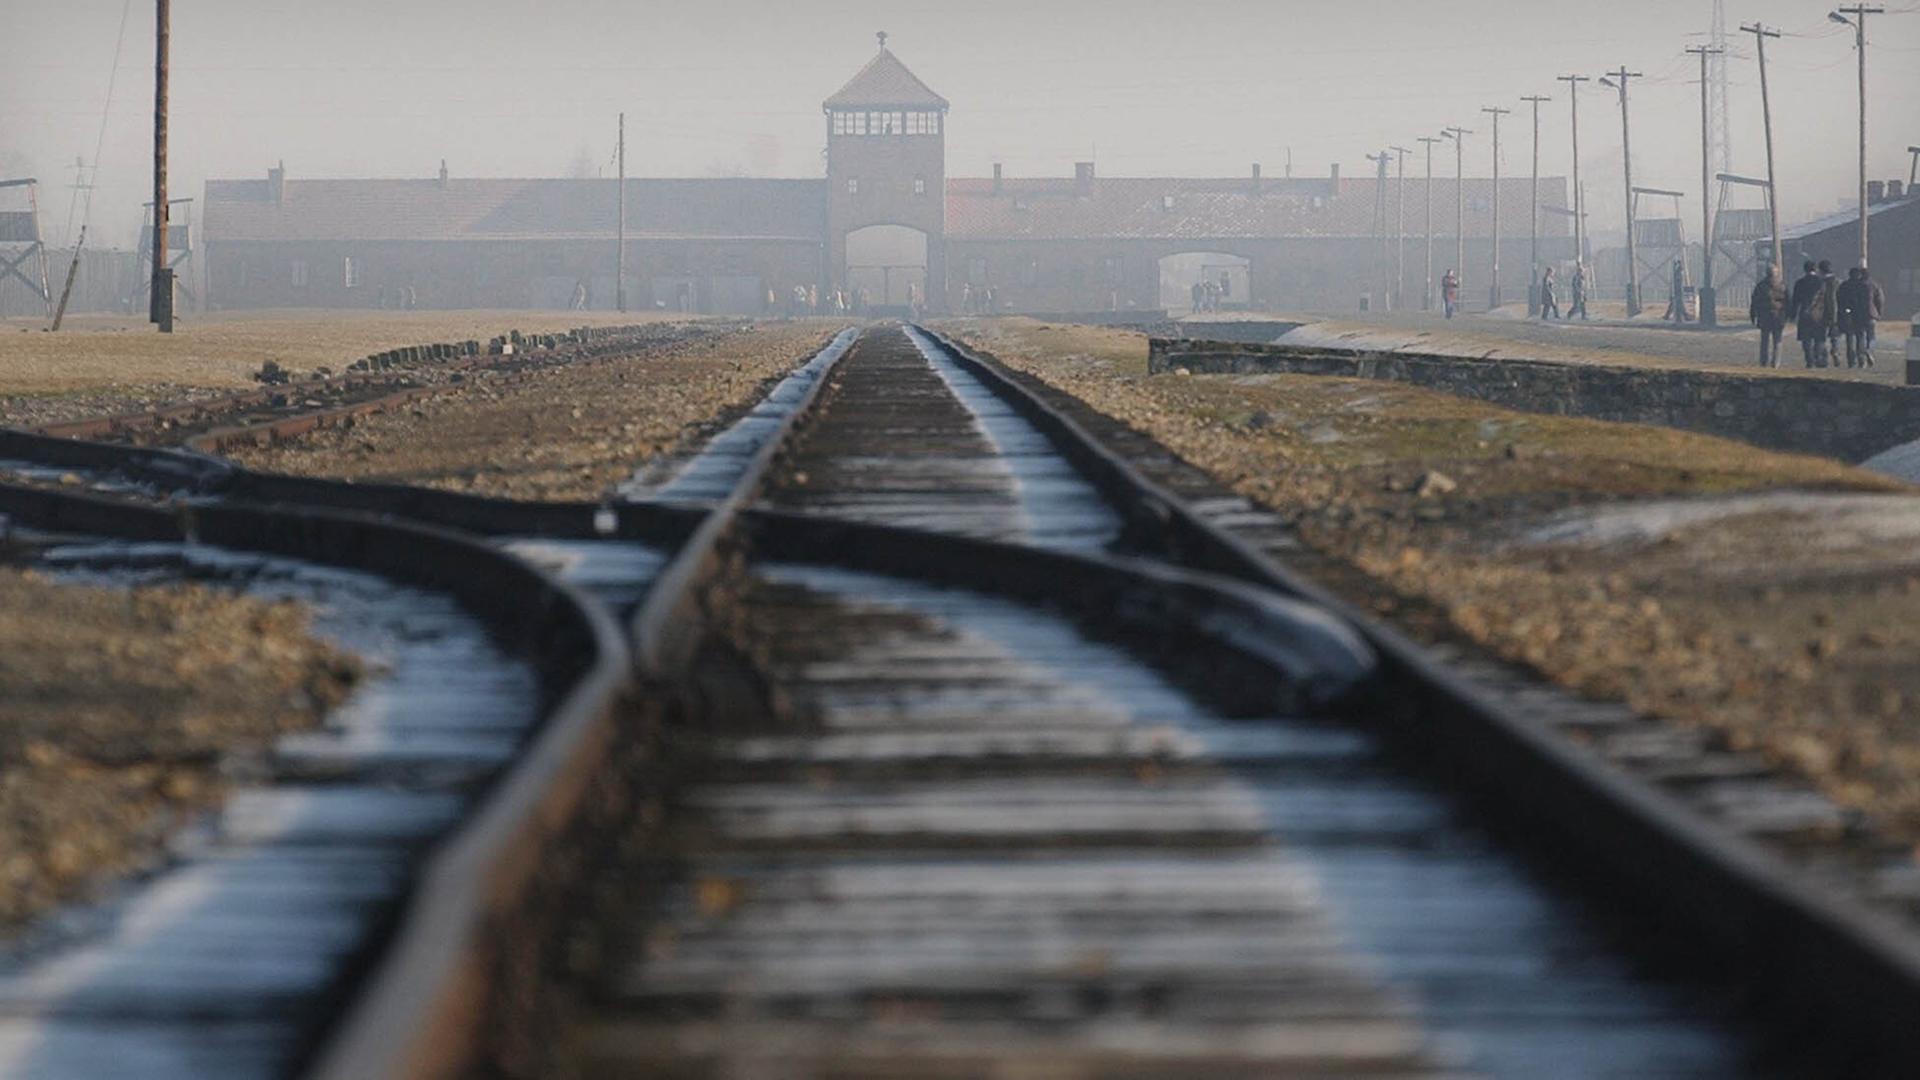 Stillgelegte Bahnschienen führen auf das Hauptgebäude von Auschwitz-Birkenau zu. Das Gebäude liegt im Nebel.